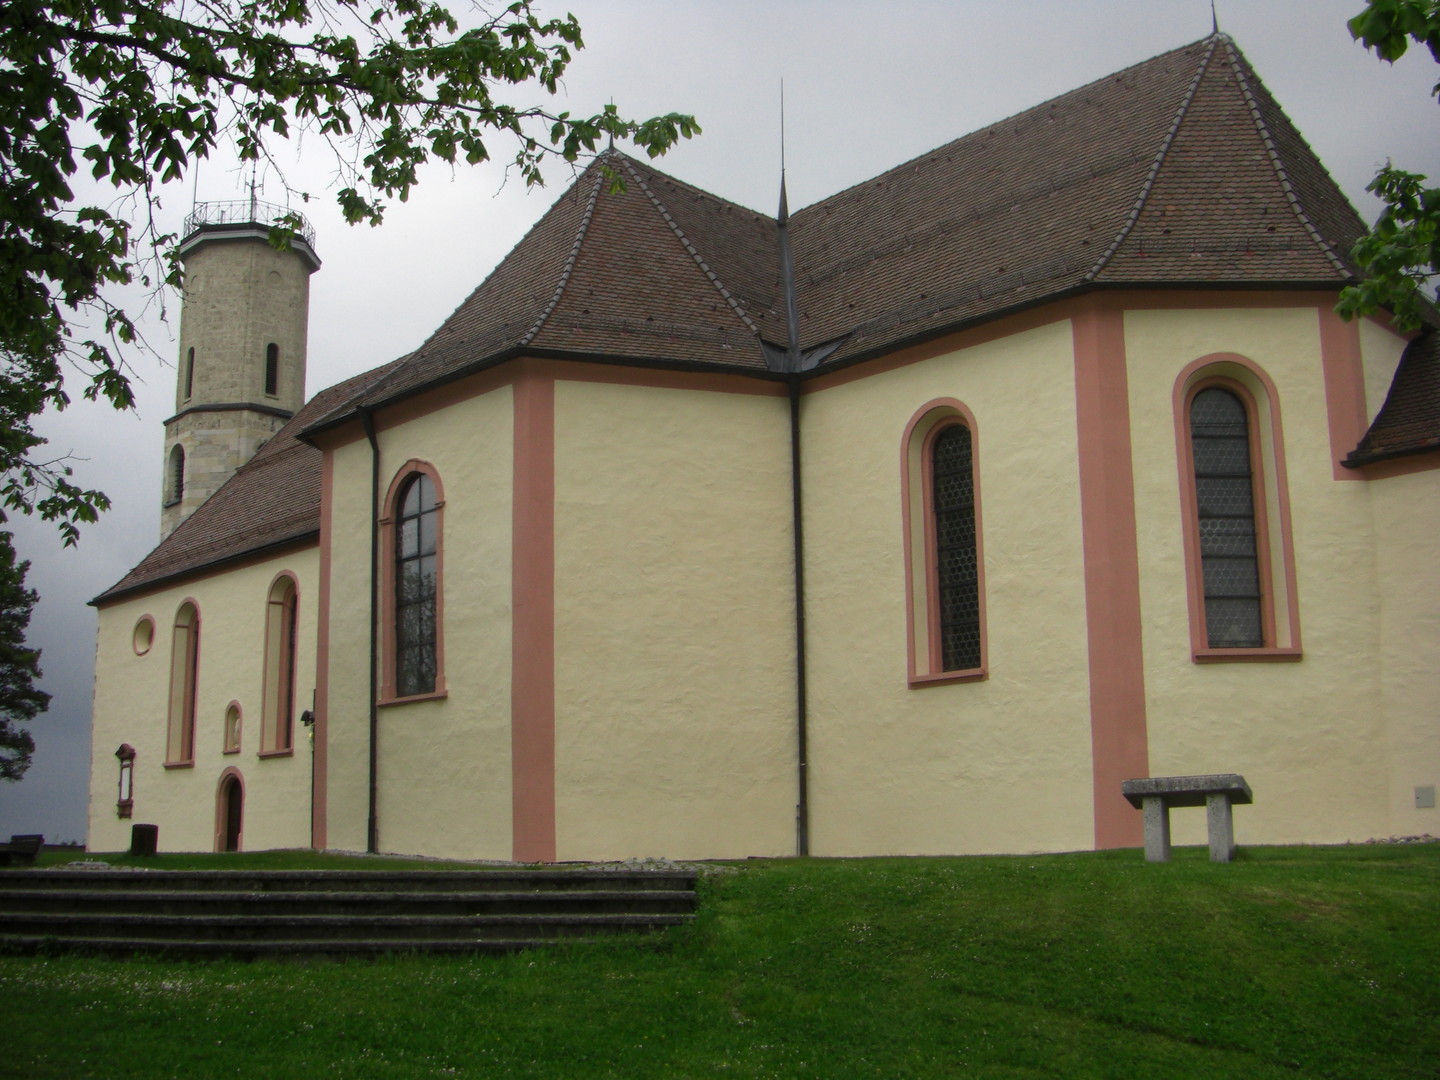 Dreifaltigkeitskirche von der Rückseite.